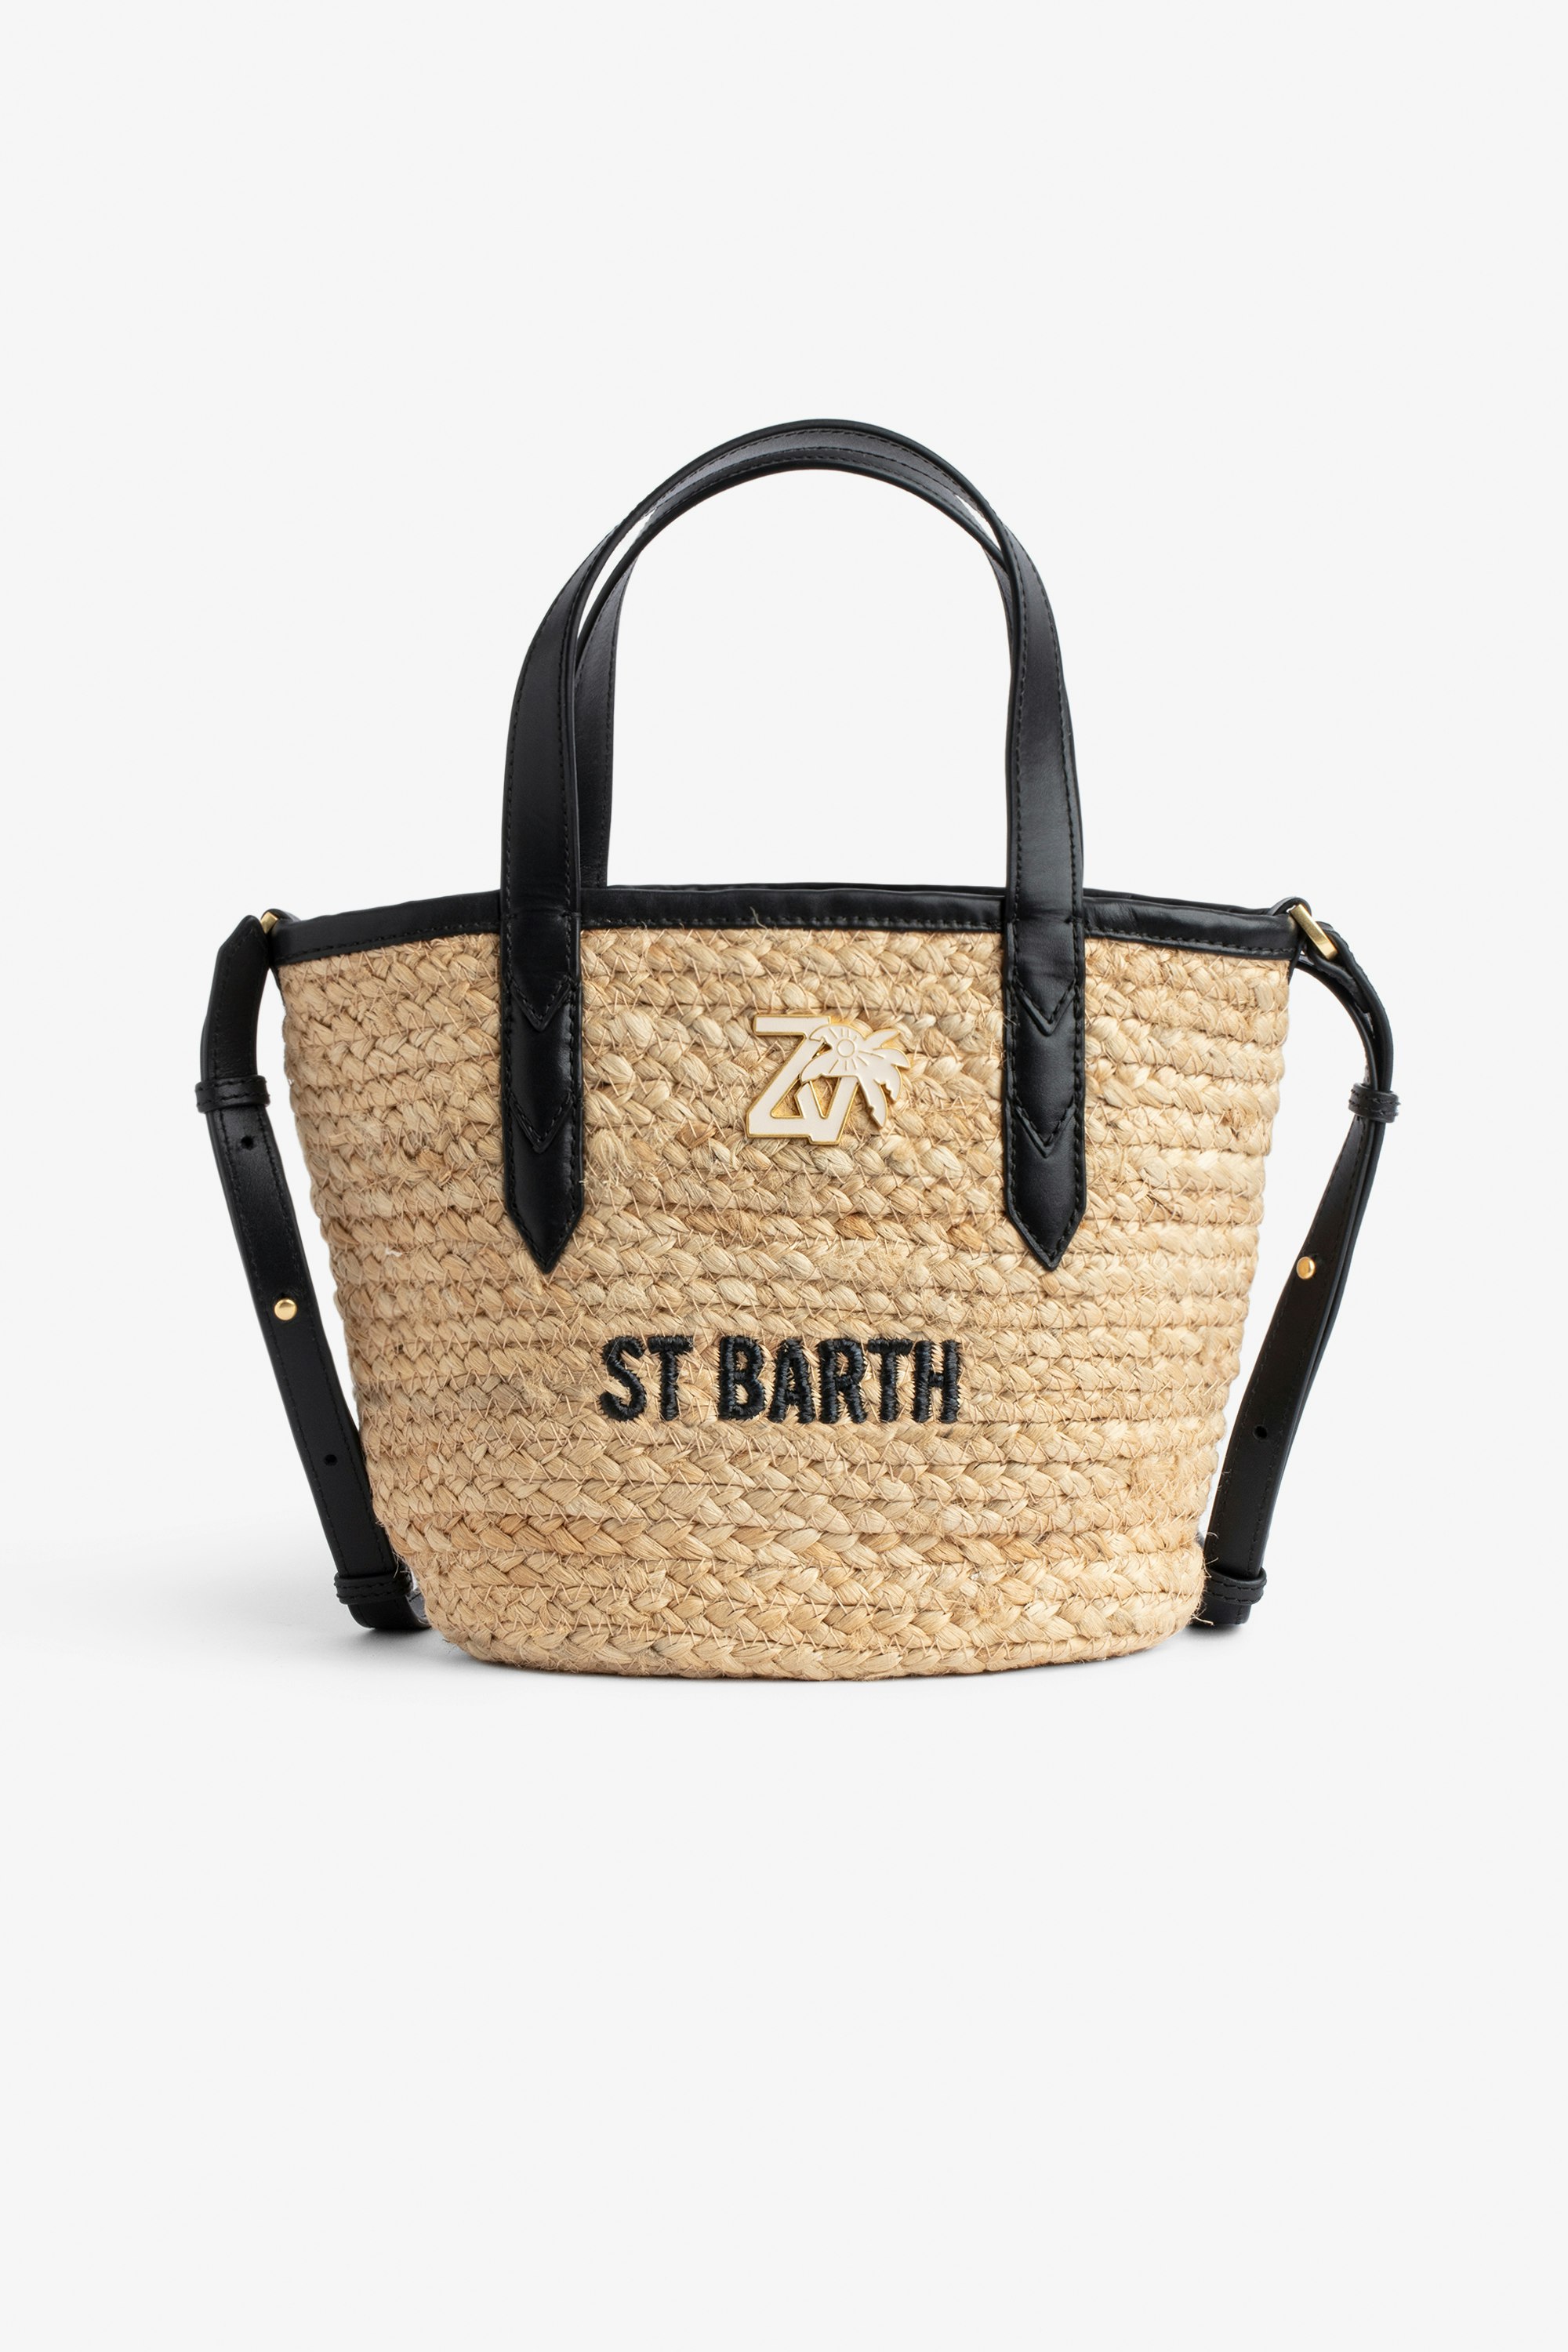 Bolso Le Baby Beach Bolso de paja con bandolera de cuero color negro, bordado «St Barth» y con colgante ZV Mujer